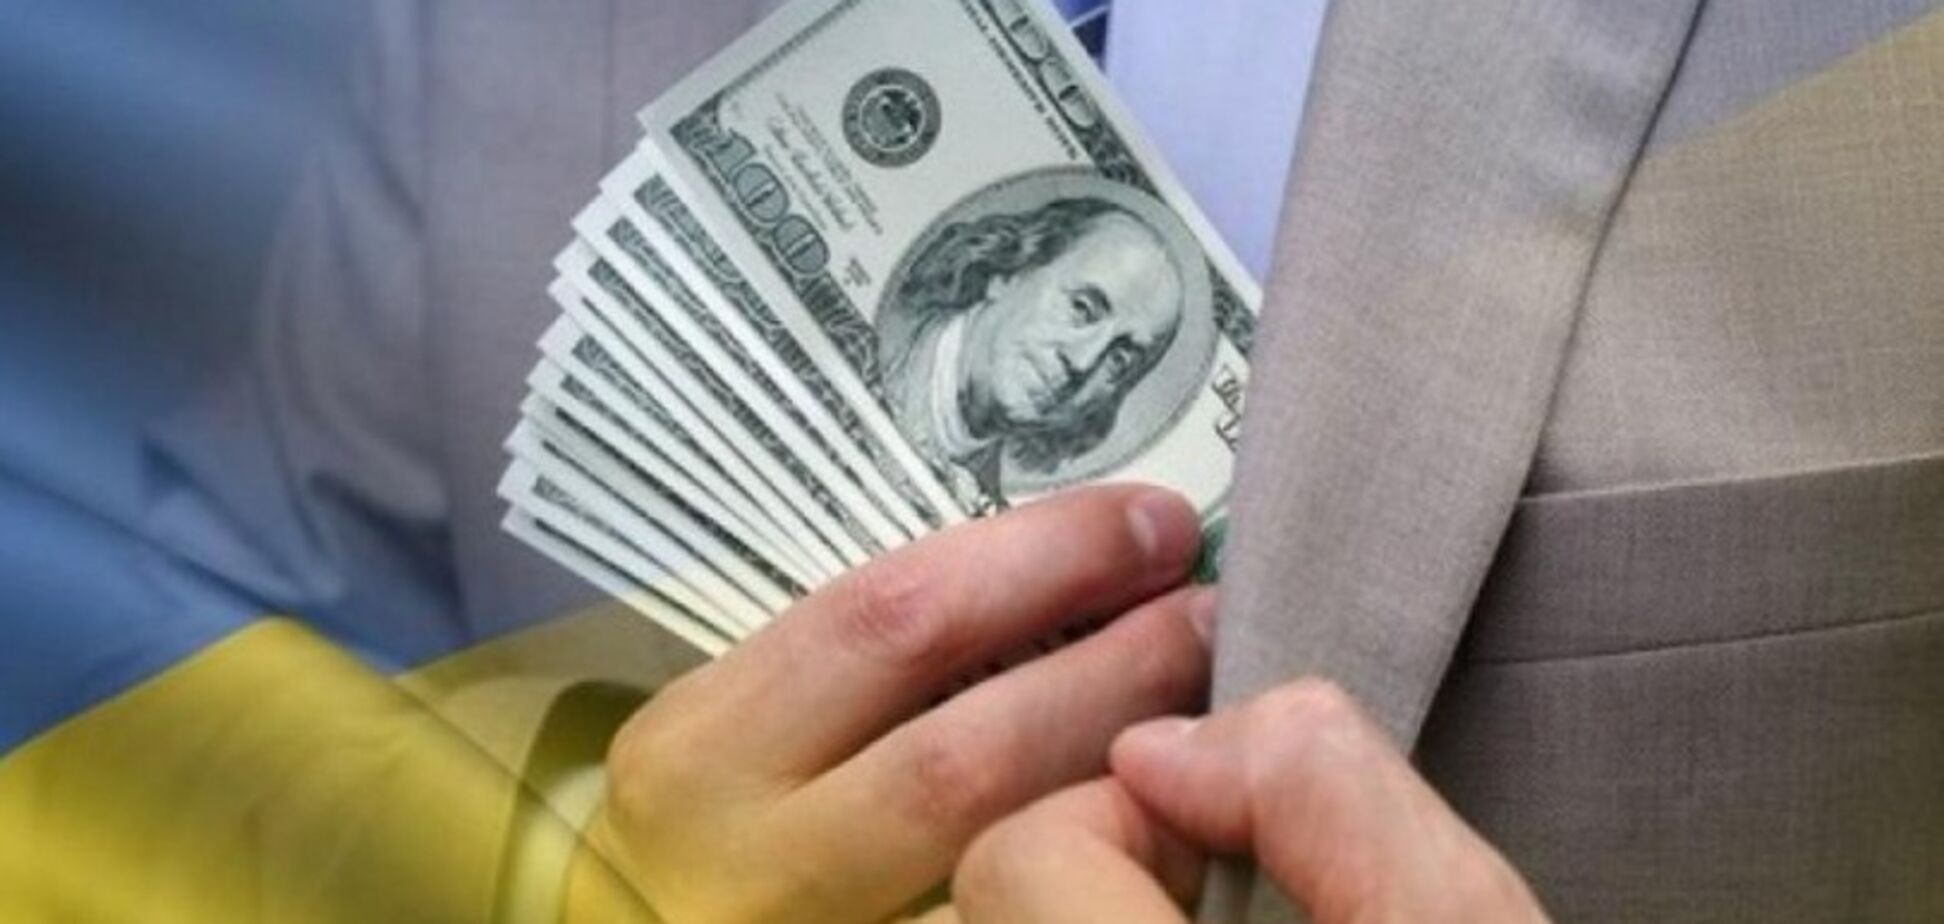 Двое экс-чиновников ОГА шантажировали и вымогали деньги у бизнесменов